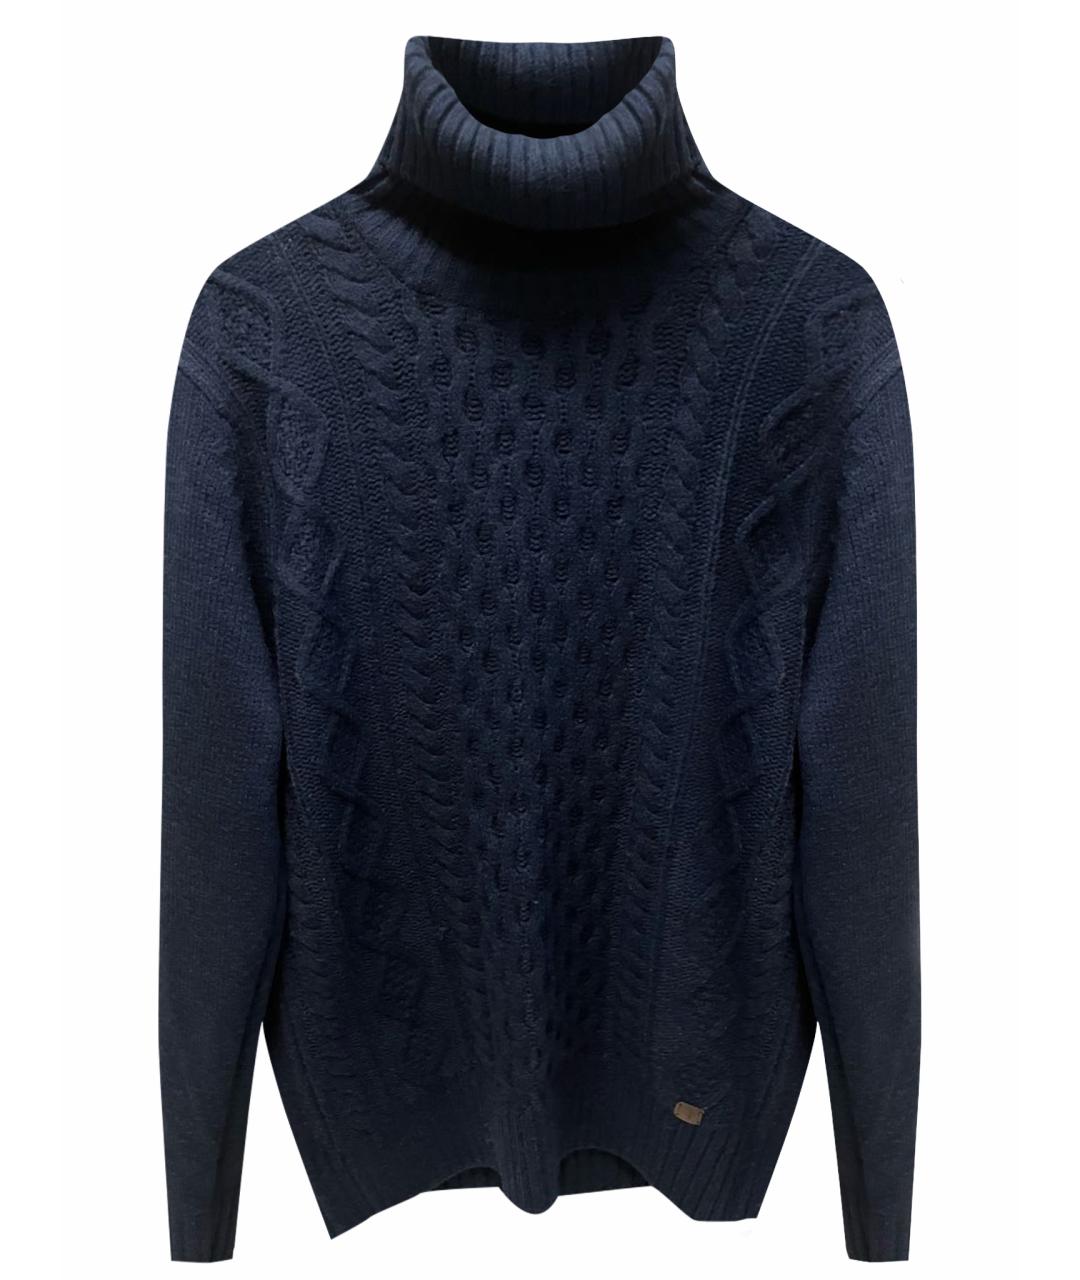 TRUSSARDI JEANS Темно-синий шерстяной джемпер / свитер, фото 1